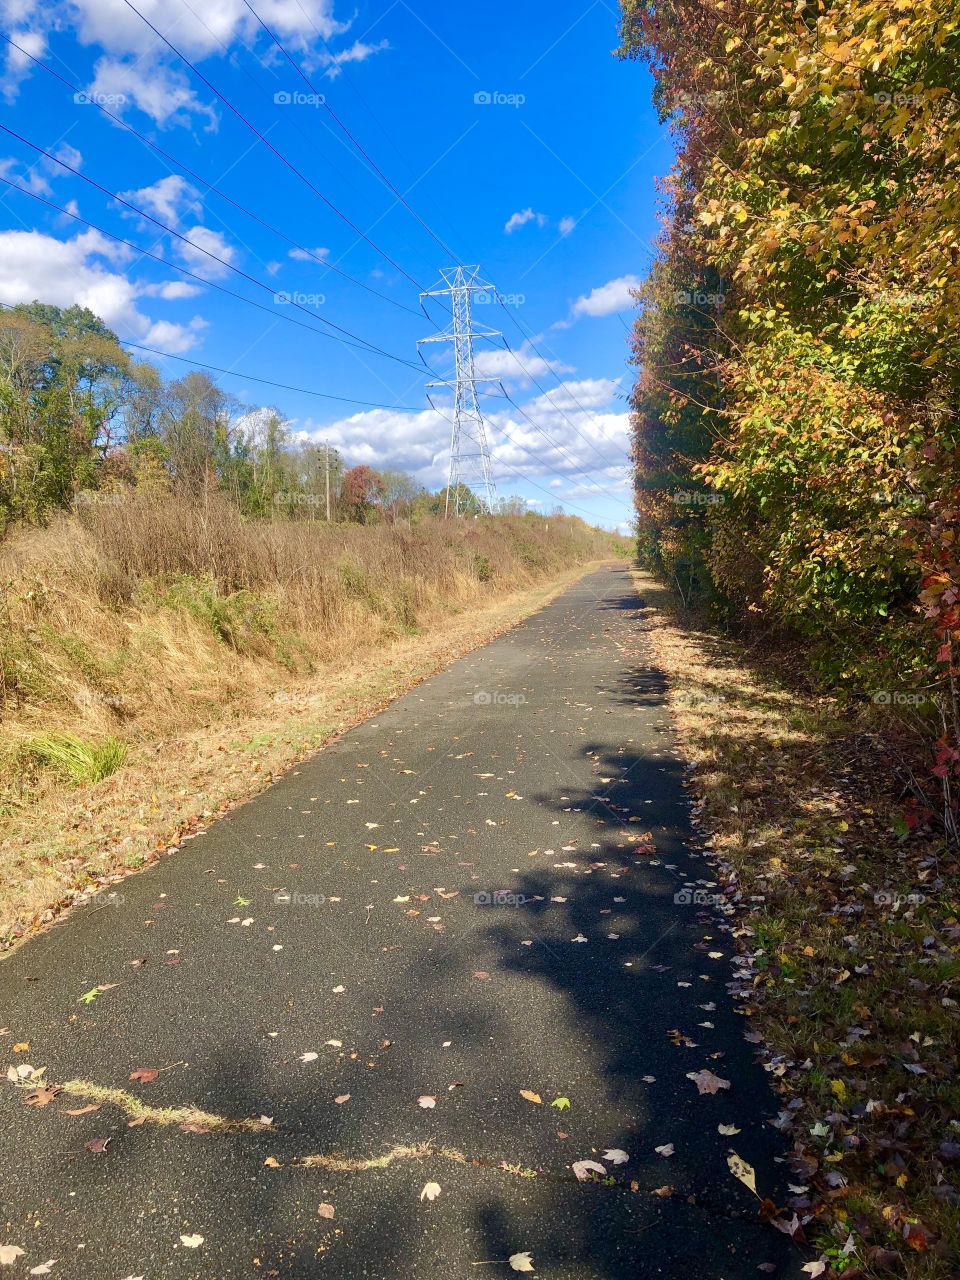 Trail and bike road